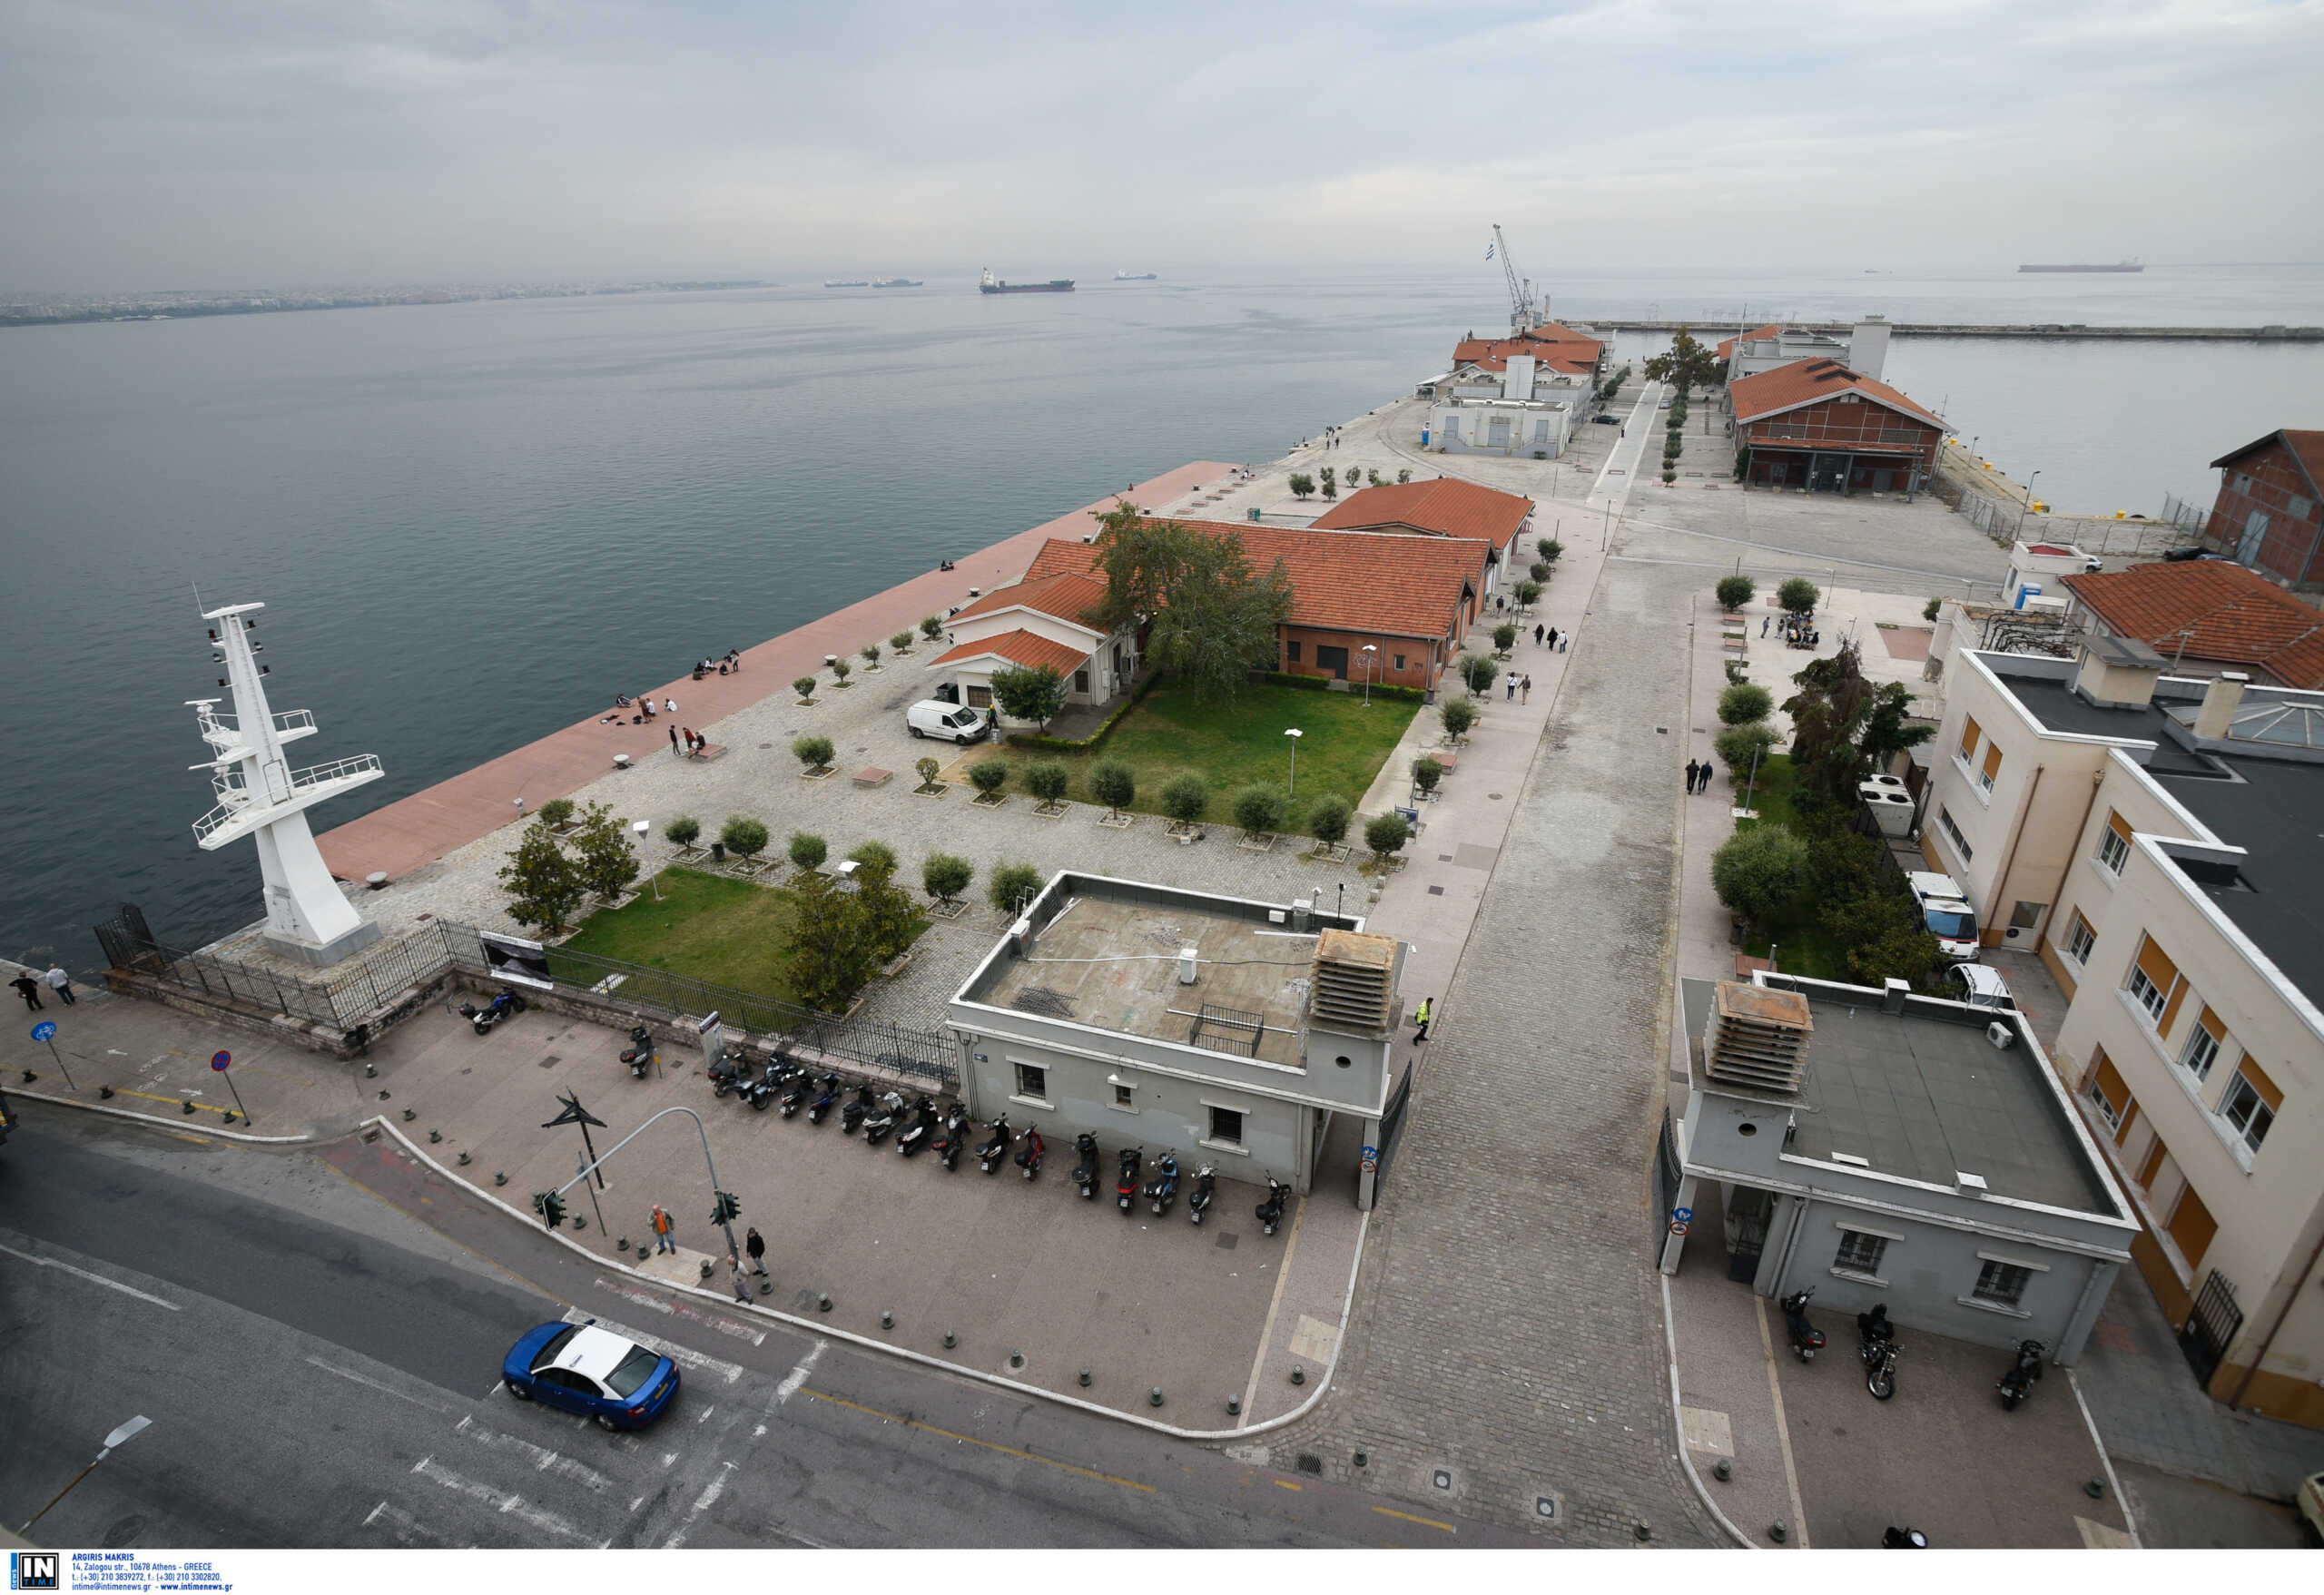 Θεσσαλονίκη: Εργατικό ατύχημα στο λιμάνι – Σε νοσοκομείο με κακώσεις  44χρονος υπάλληλος